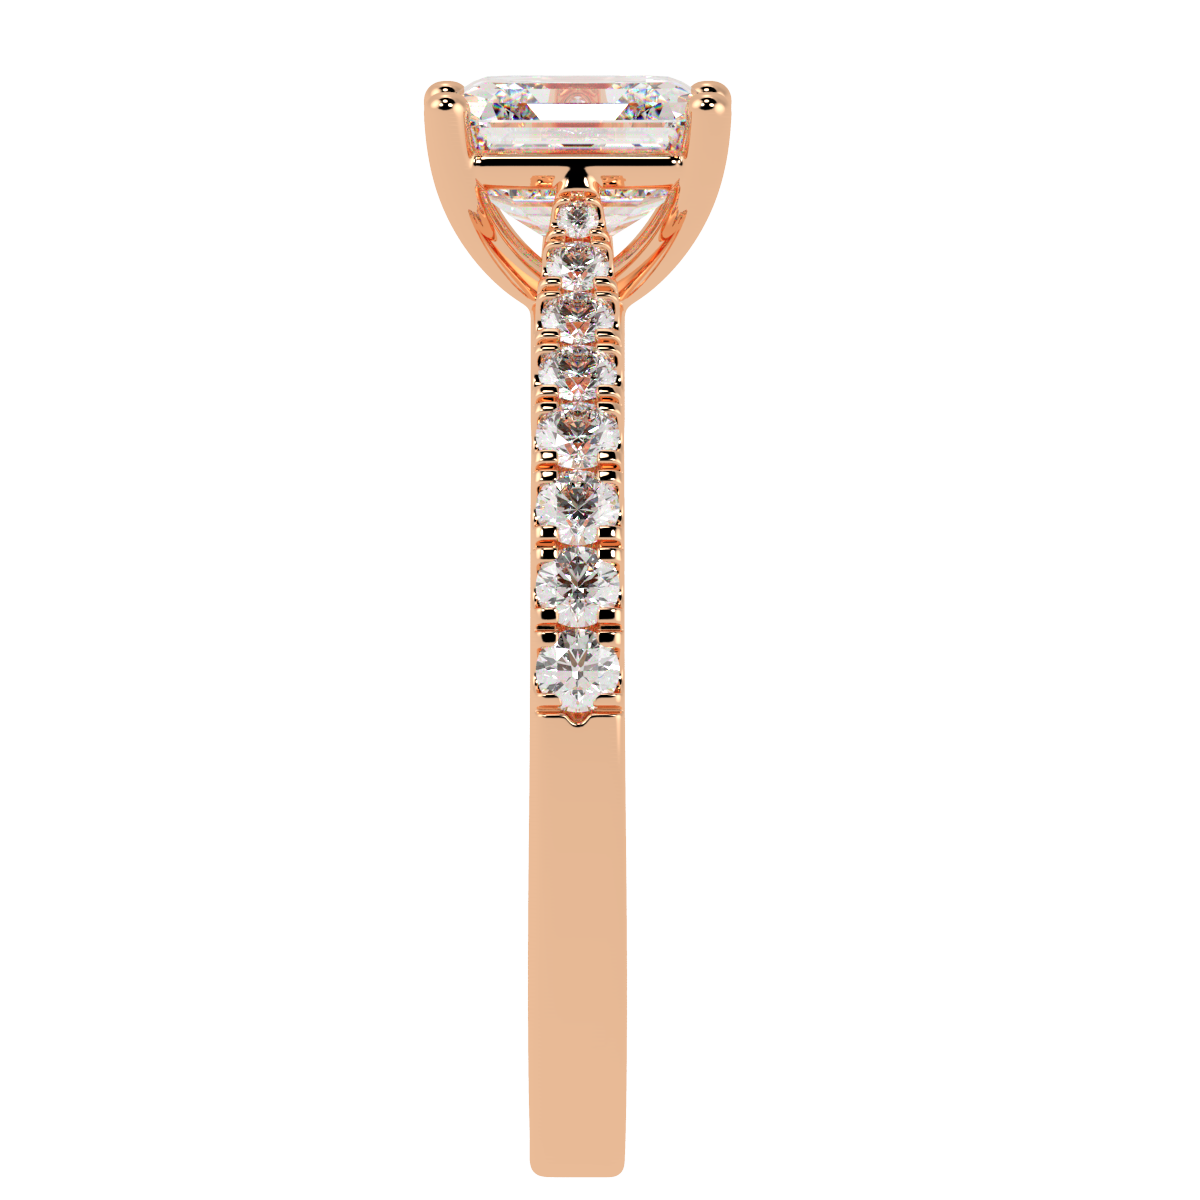 Classic Asscher Diamond Shoulder Ring